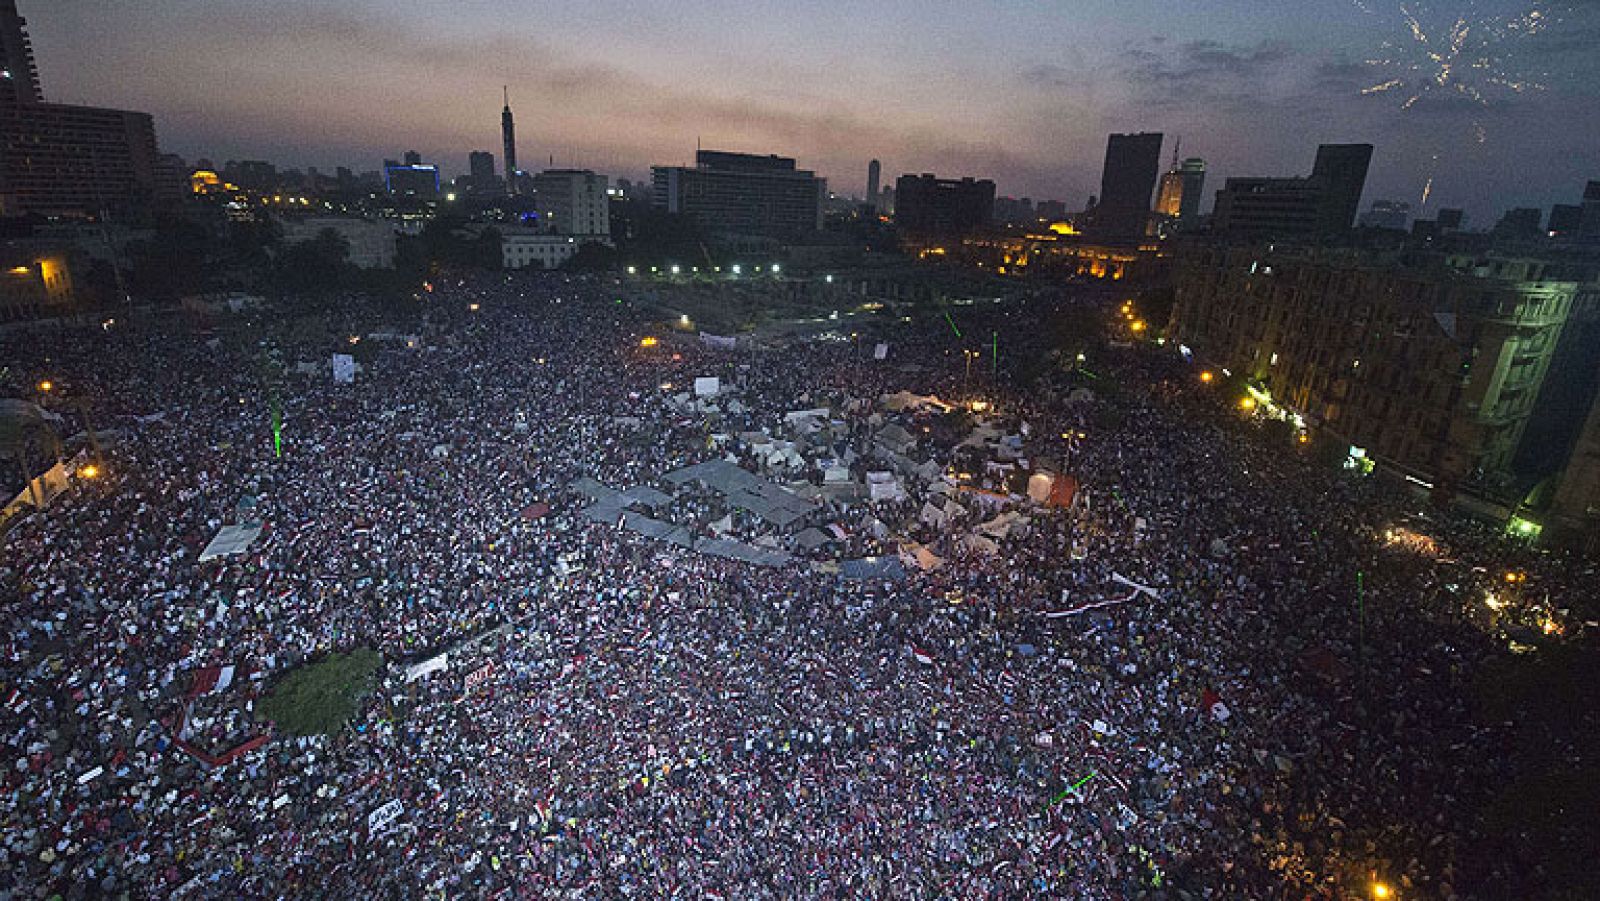  El Ejército de Egipto suspenderá la Constitución y disolverá el Parlamento de mayoría islamista si el presidente Mohamed Morsi y la oposición no son capaces de llegar a un acuerdo y dar una respuesta a las masivas manifestaciones que piden la dimisión del Gobierno. Esta es la hoja de ruta de las Fuerzas Armadas egipcias.   Ese ultimátum se acaba mañana. El que ha expirado ya es el de los manifestantes, que le habían dado de plazo hasta esta tarde para irse o enfrentarse a una campaña de desobediencia civil. Varios grupos opositores han nombrado portavoz al Nobel de la paz Mohamed El Baradei. 